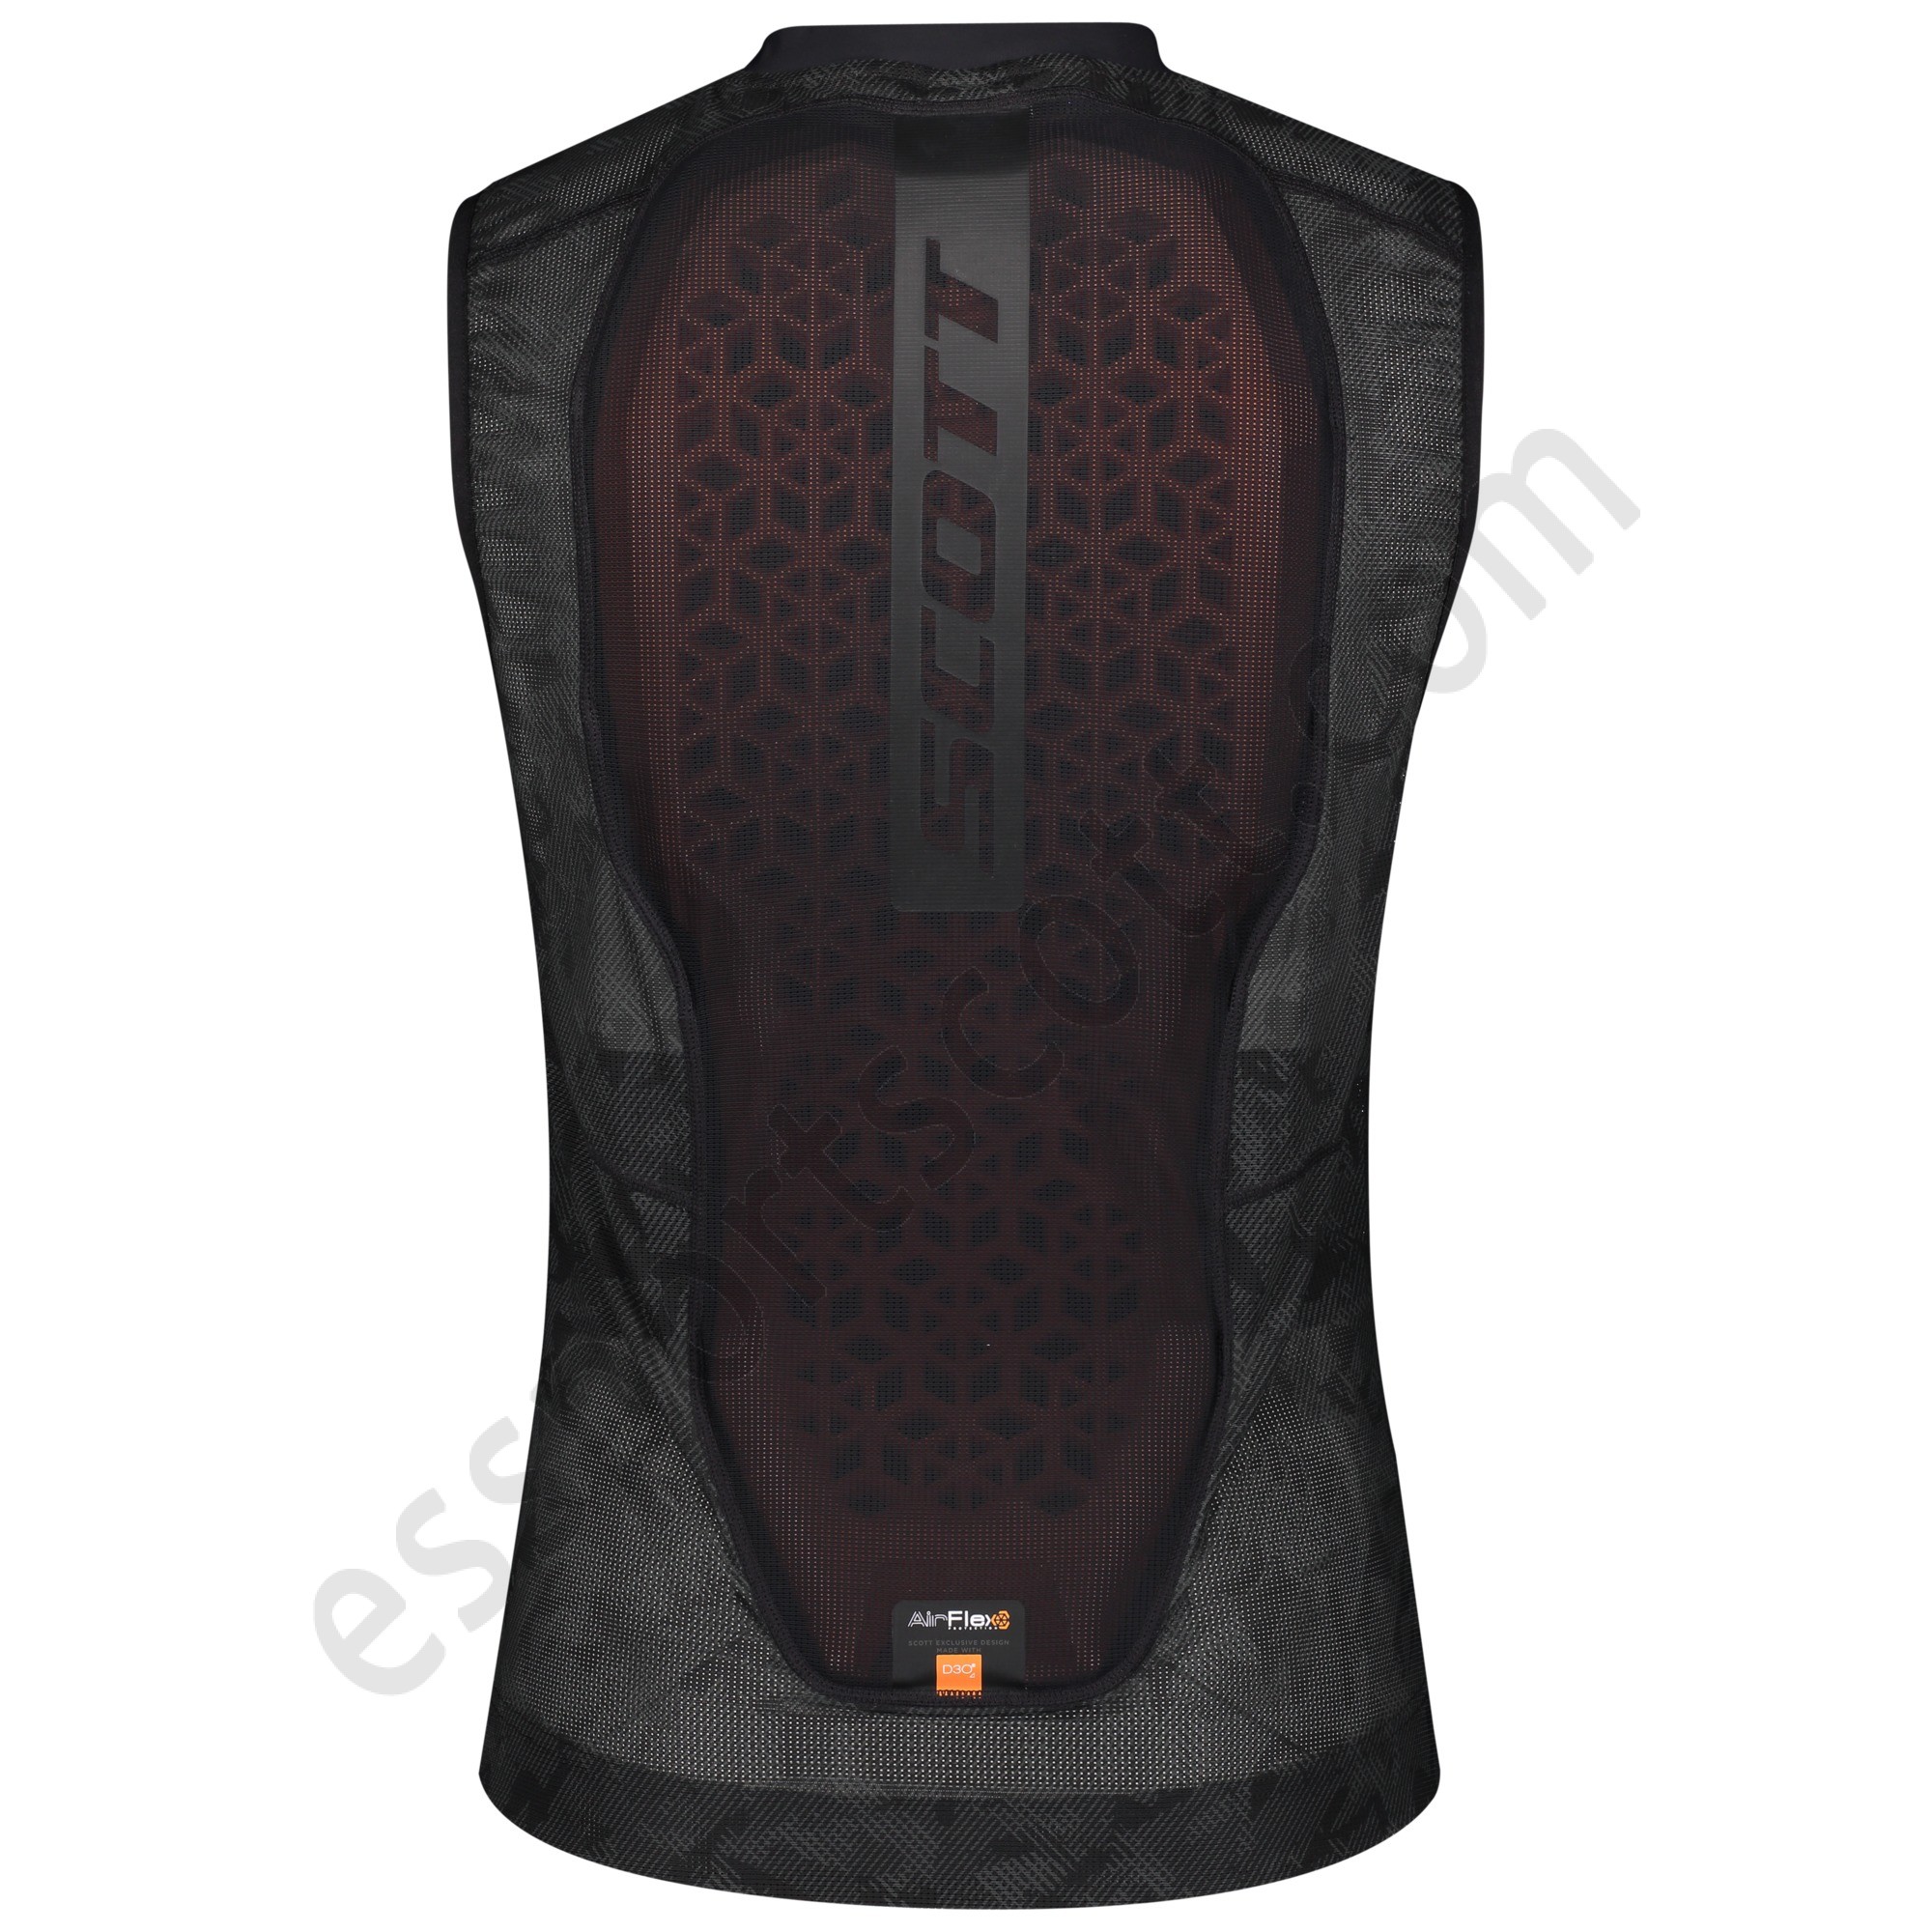 Scott Descuento ◇ AirFlex Men's Light Vest Protector - Scott Descuento ◇ AirFlex Men's Light Vest Protector